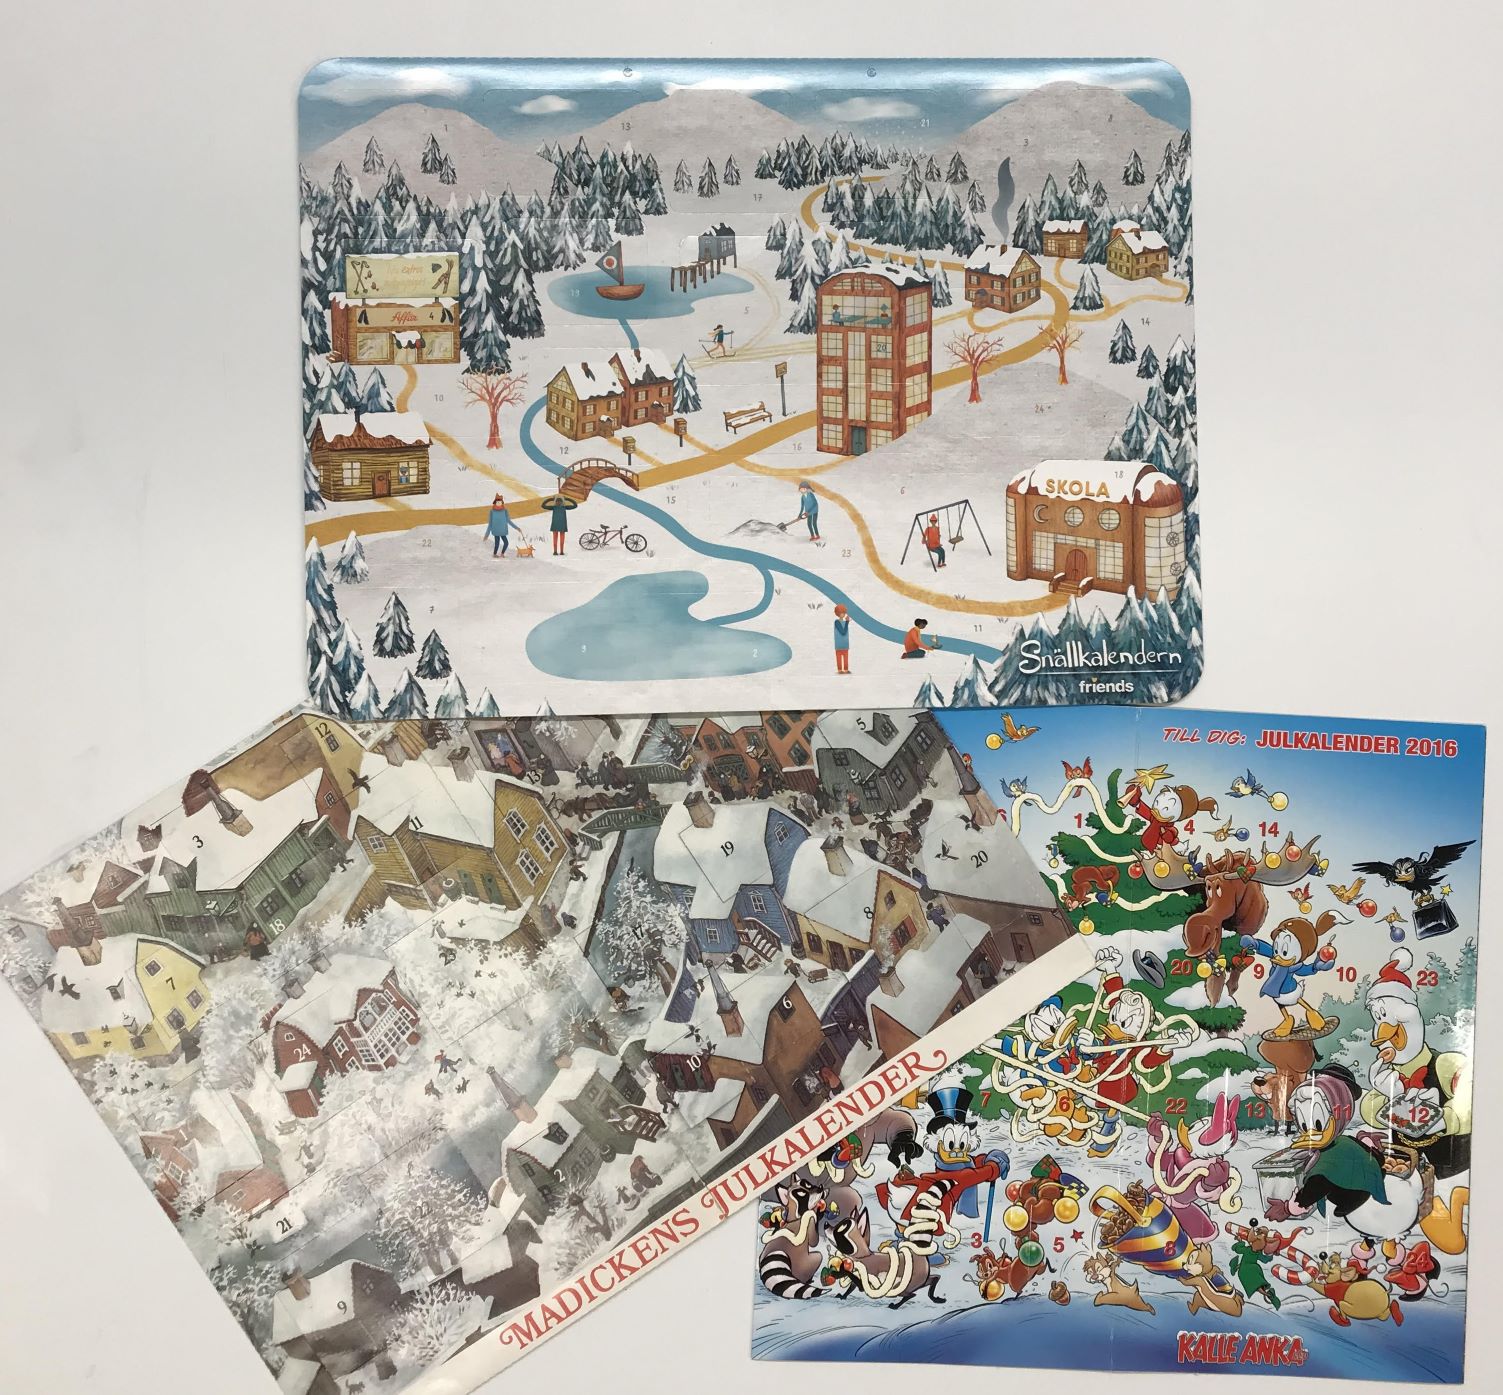 Överst Snällkalendern med vintermotiv över en stad, till vänster Madickens julkalender och till höger en kalender där Kalle Anka & co förbereder julen